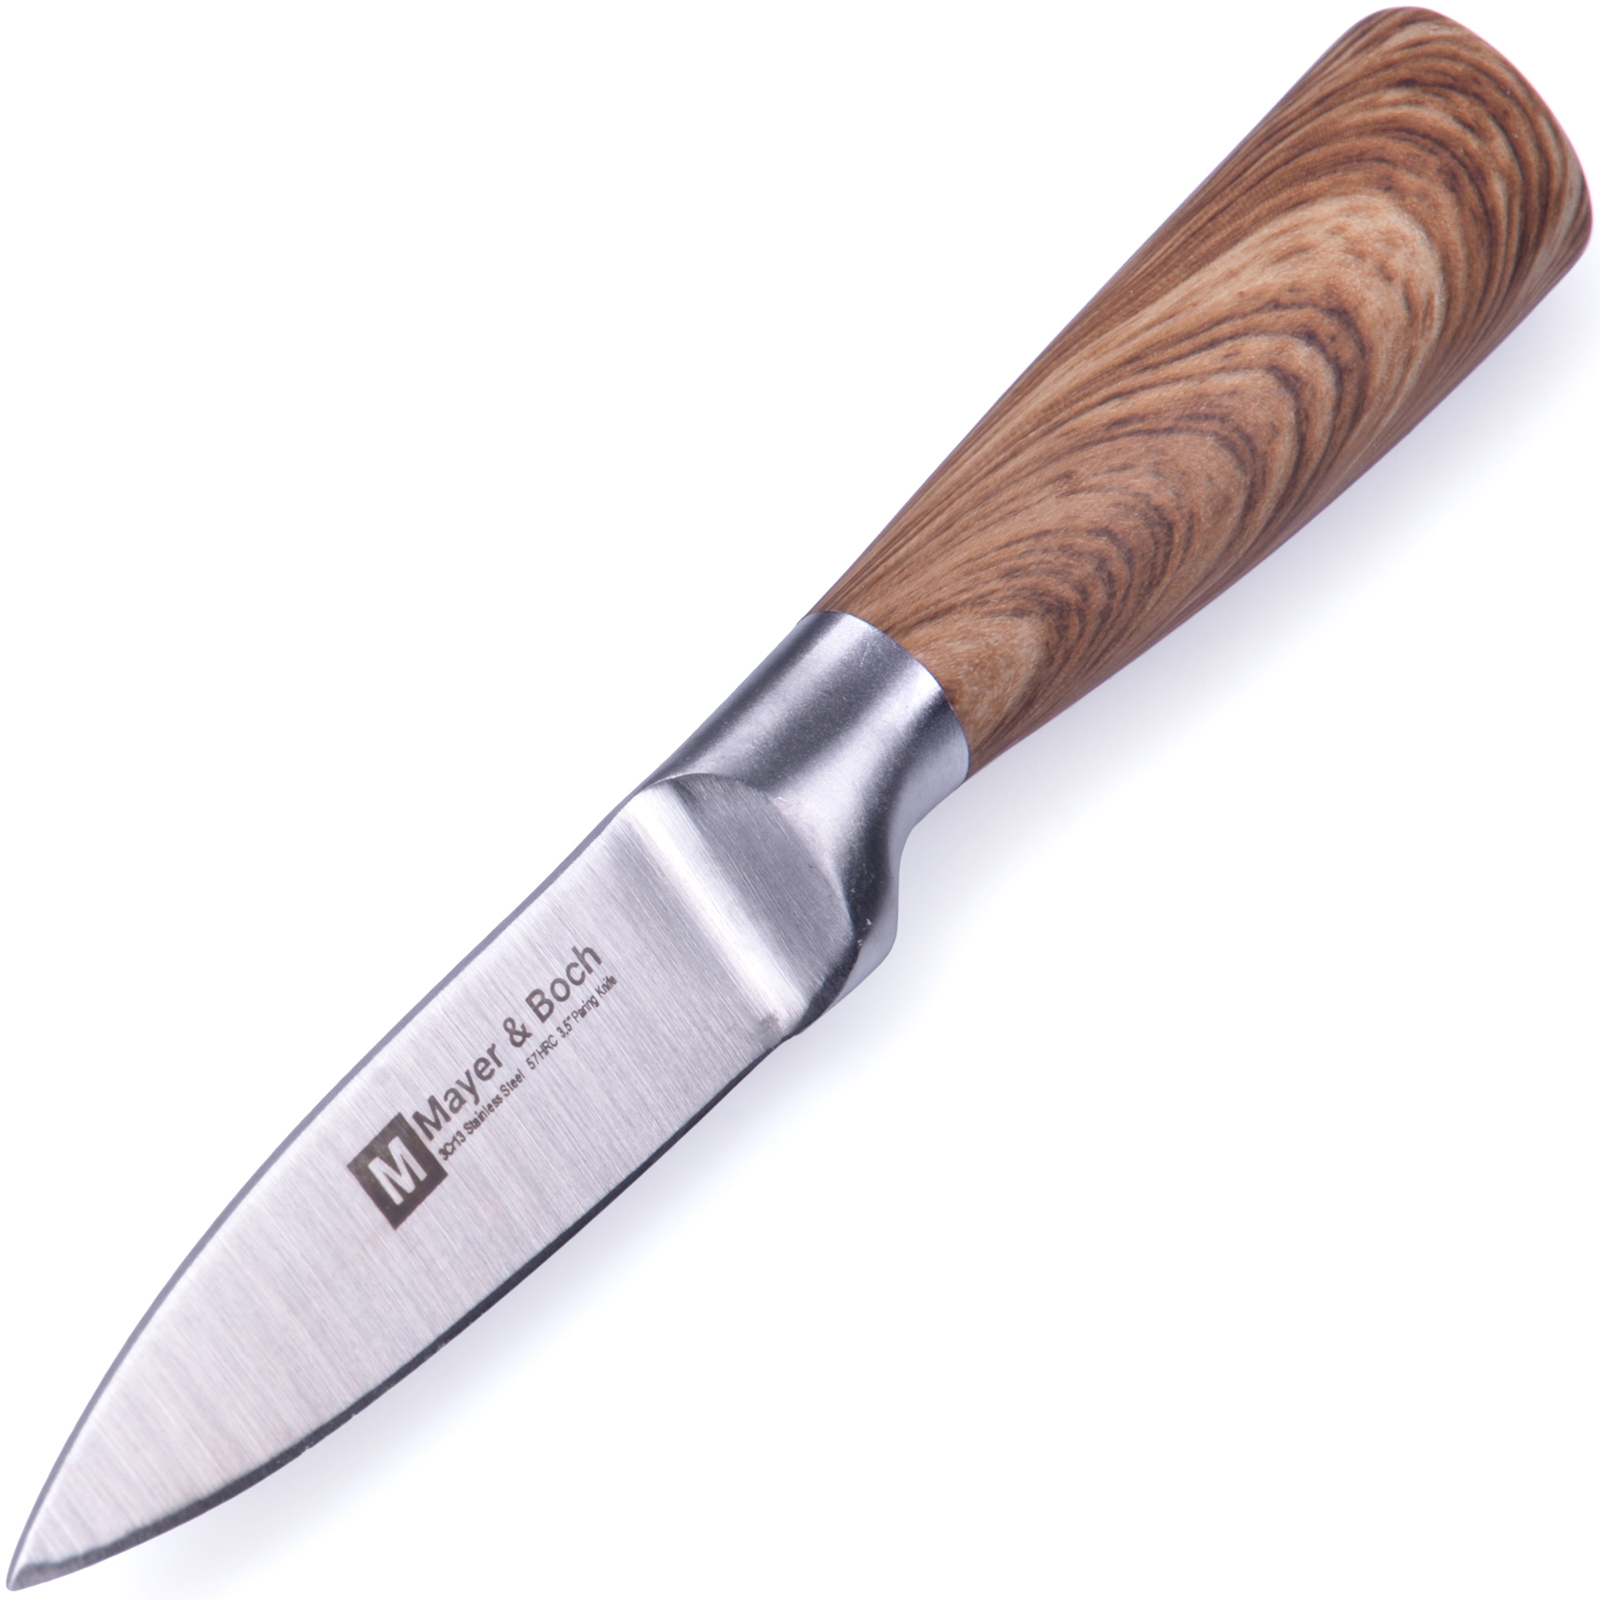 фото Нож разделочный Mayer & Boch Amati, цвет: серебристый, коричневый, длина лезвия 8,5 см